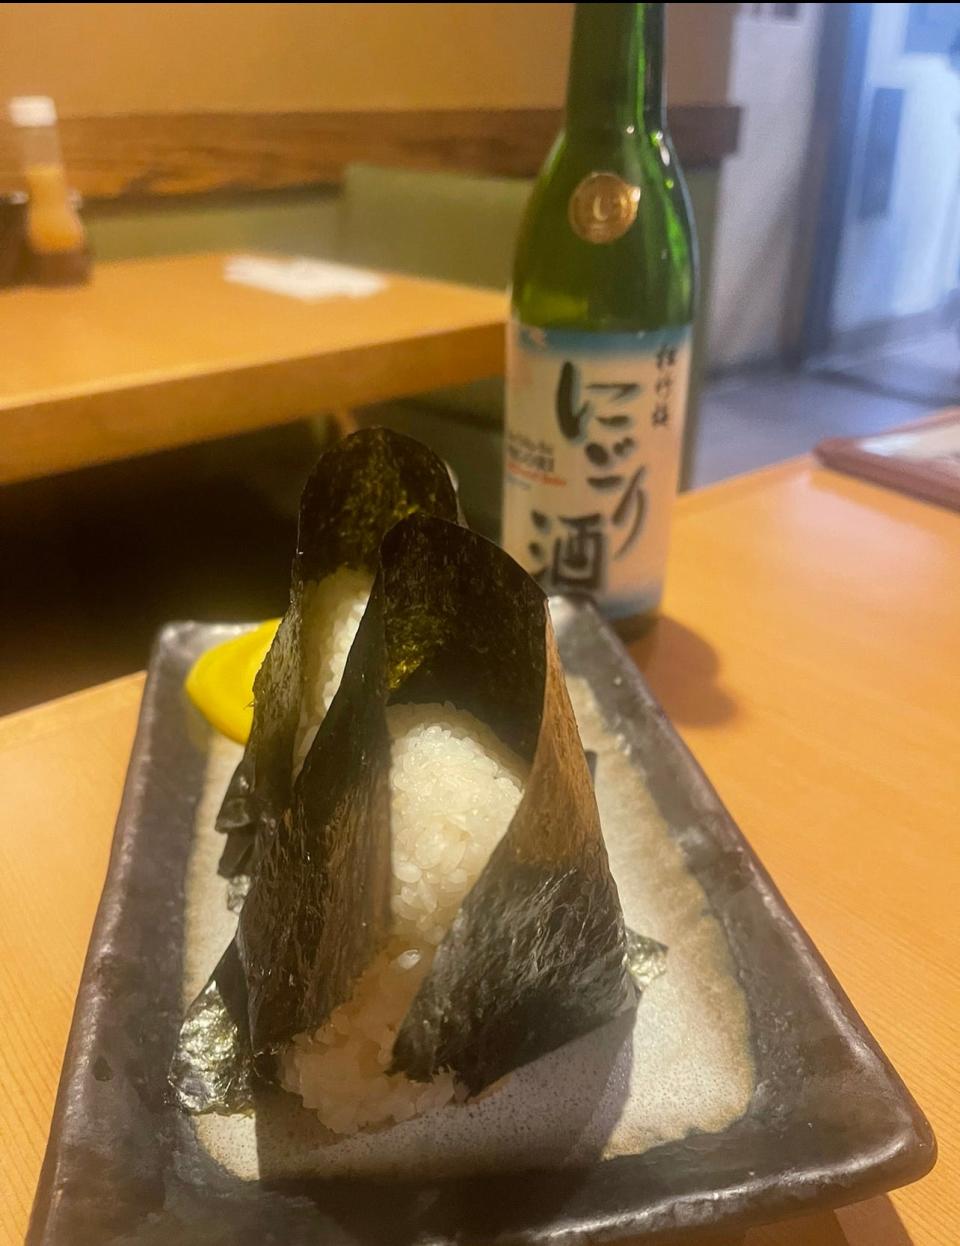 Grilled salmon onigiri (Japanese rice balls) from Katsu-Hama in New York City.